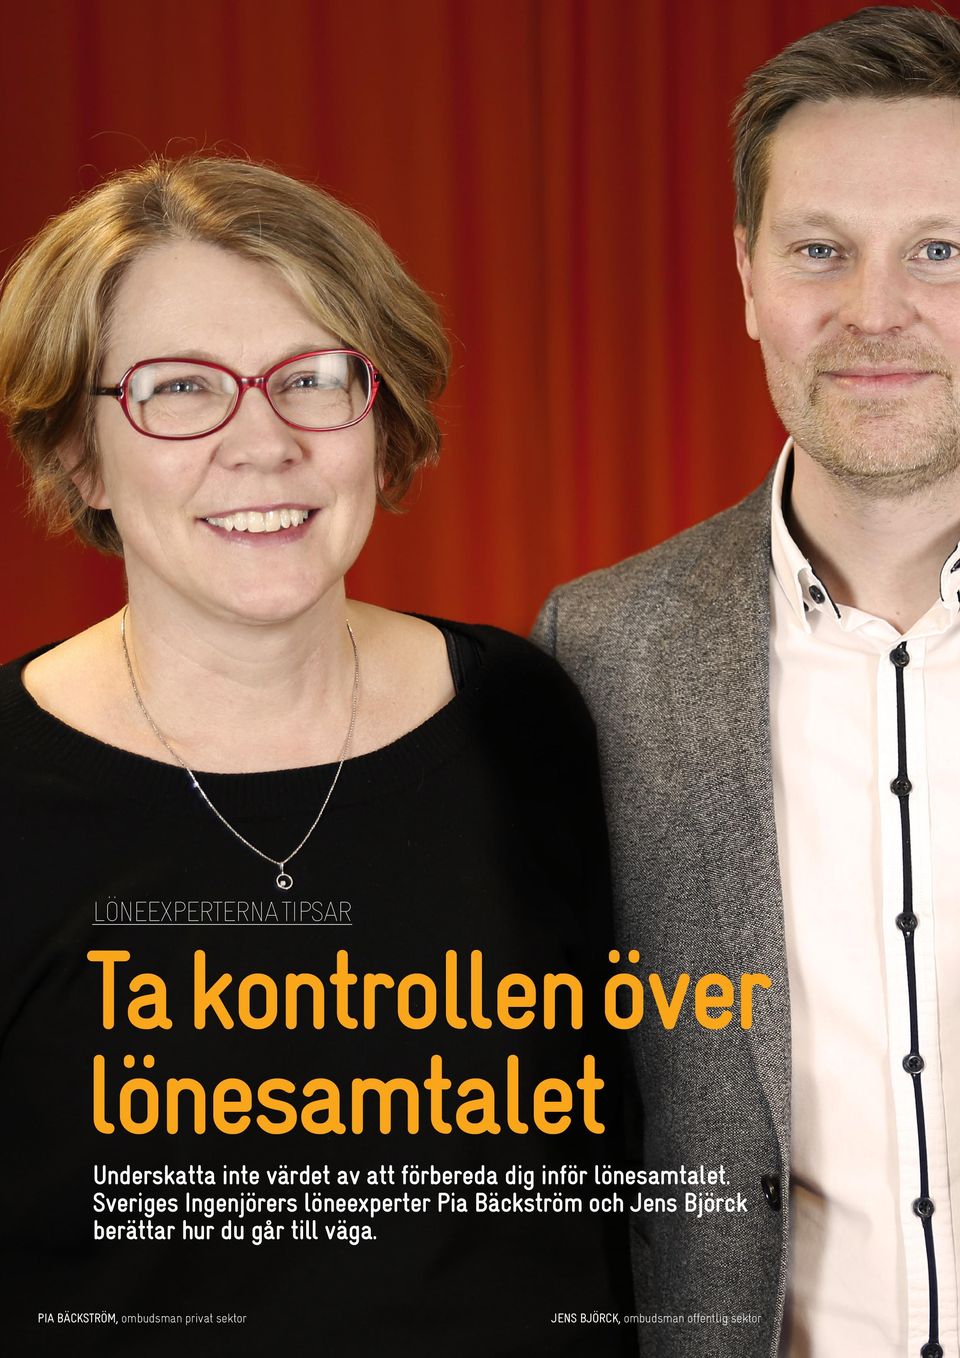 Sveriges Ingenjörers löneexperter Pia Bäckström och Jens Björck berättar